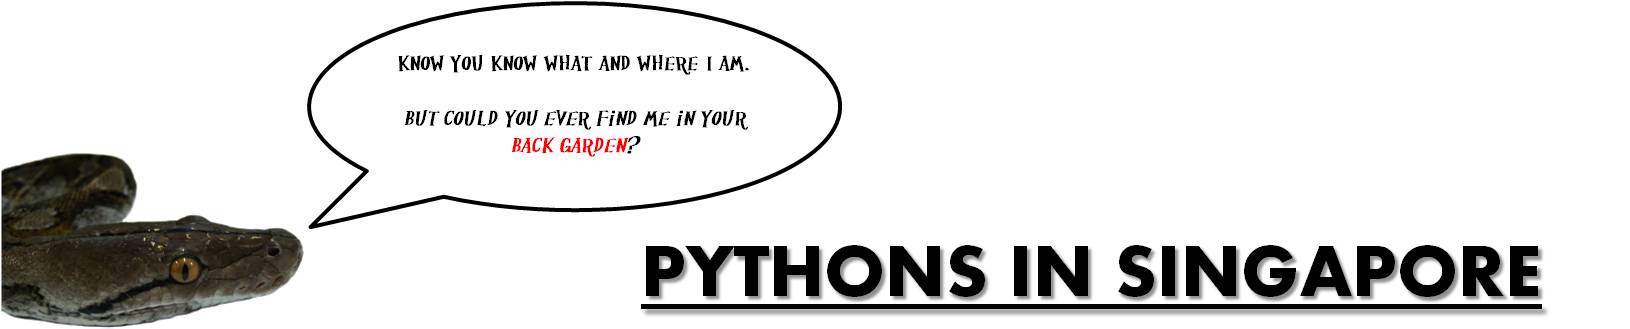 python_-_singapore.jpg